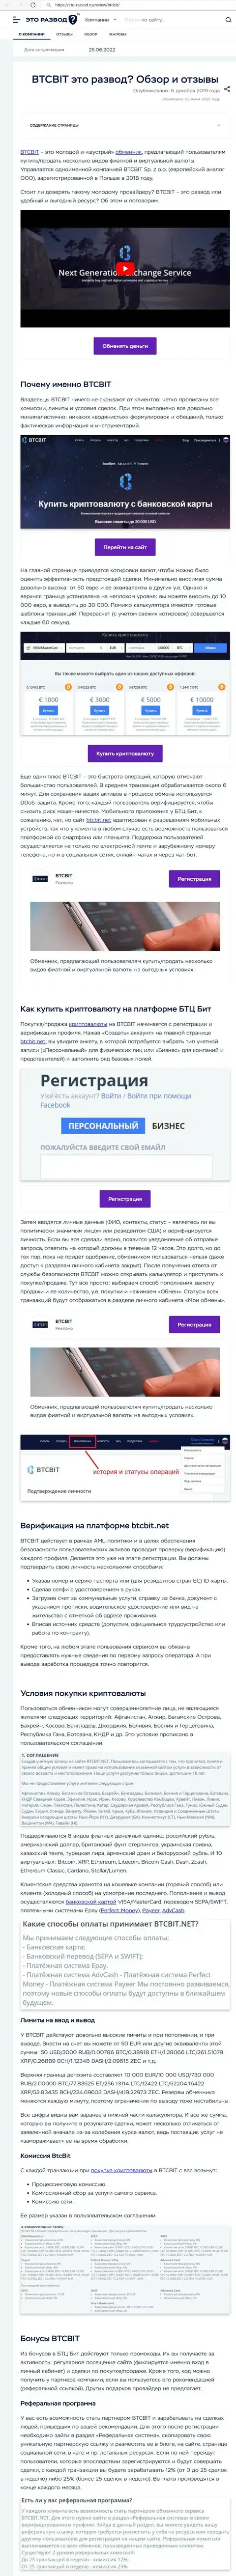 Обзор и условия для совершения сделок онлайн обменки BTC Bit в статье на сайте Eto Razvod Ru